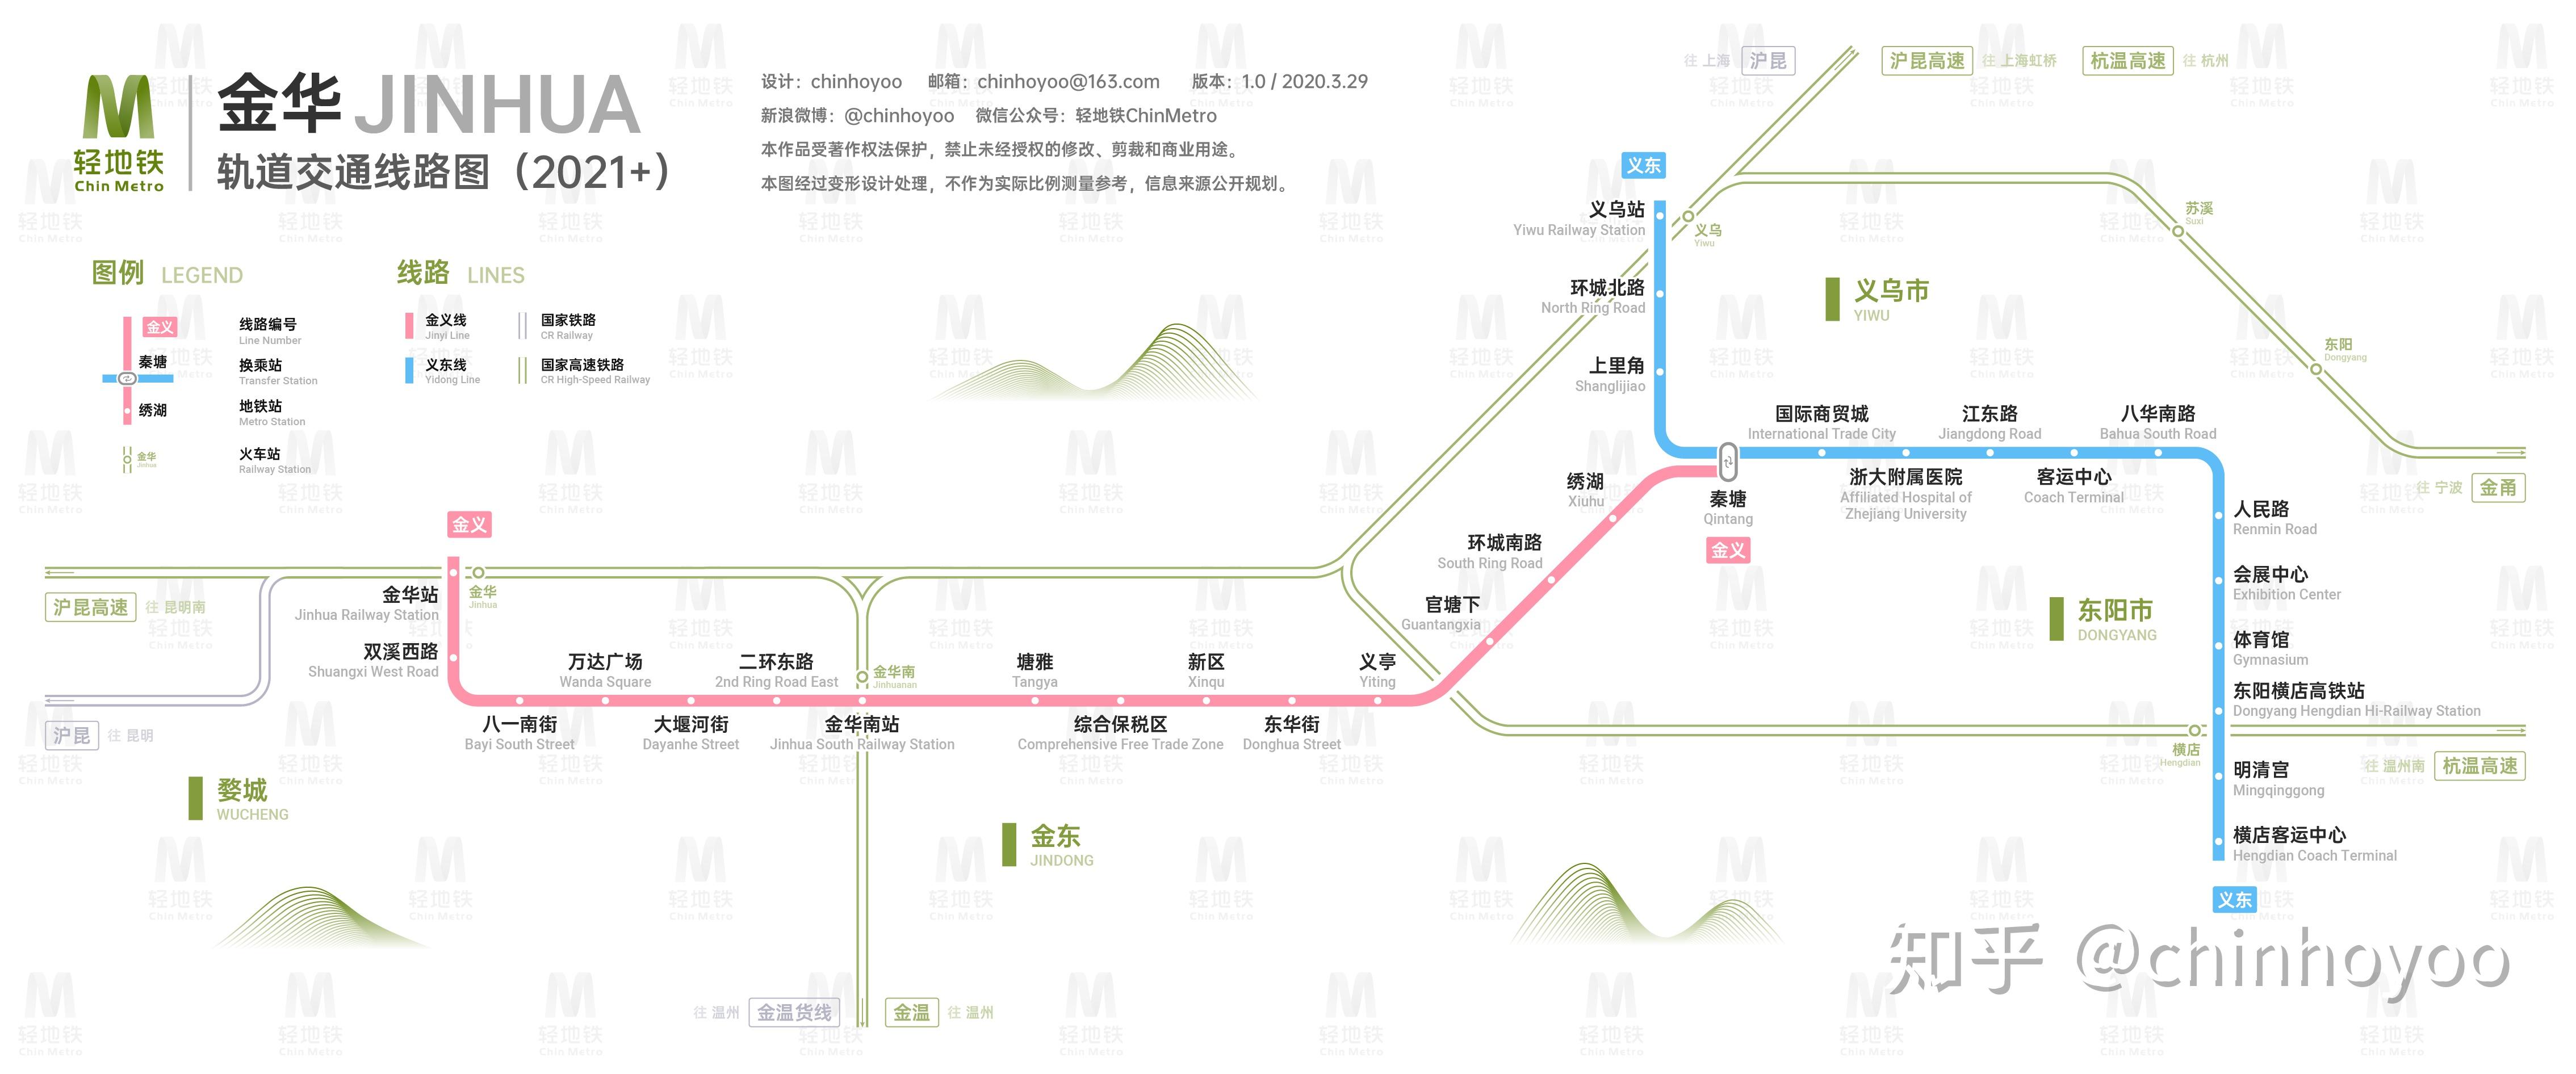 金华轨道交通于2014年获国家发改委批准建设,为金华至义乌至东阳城际